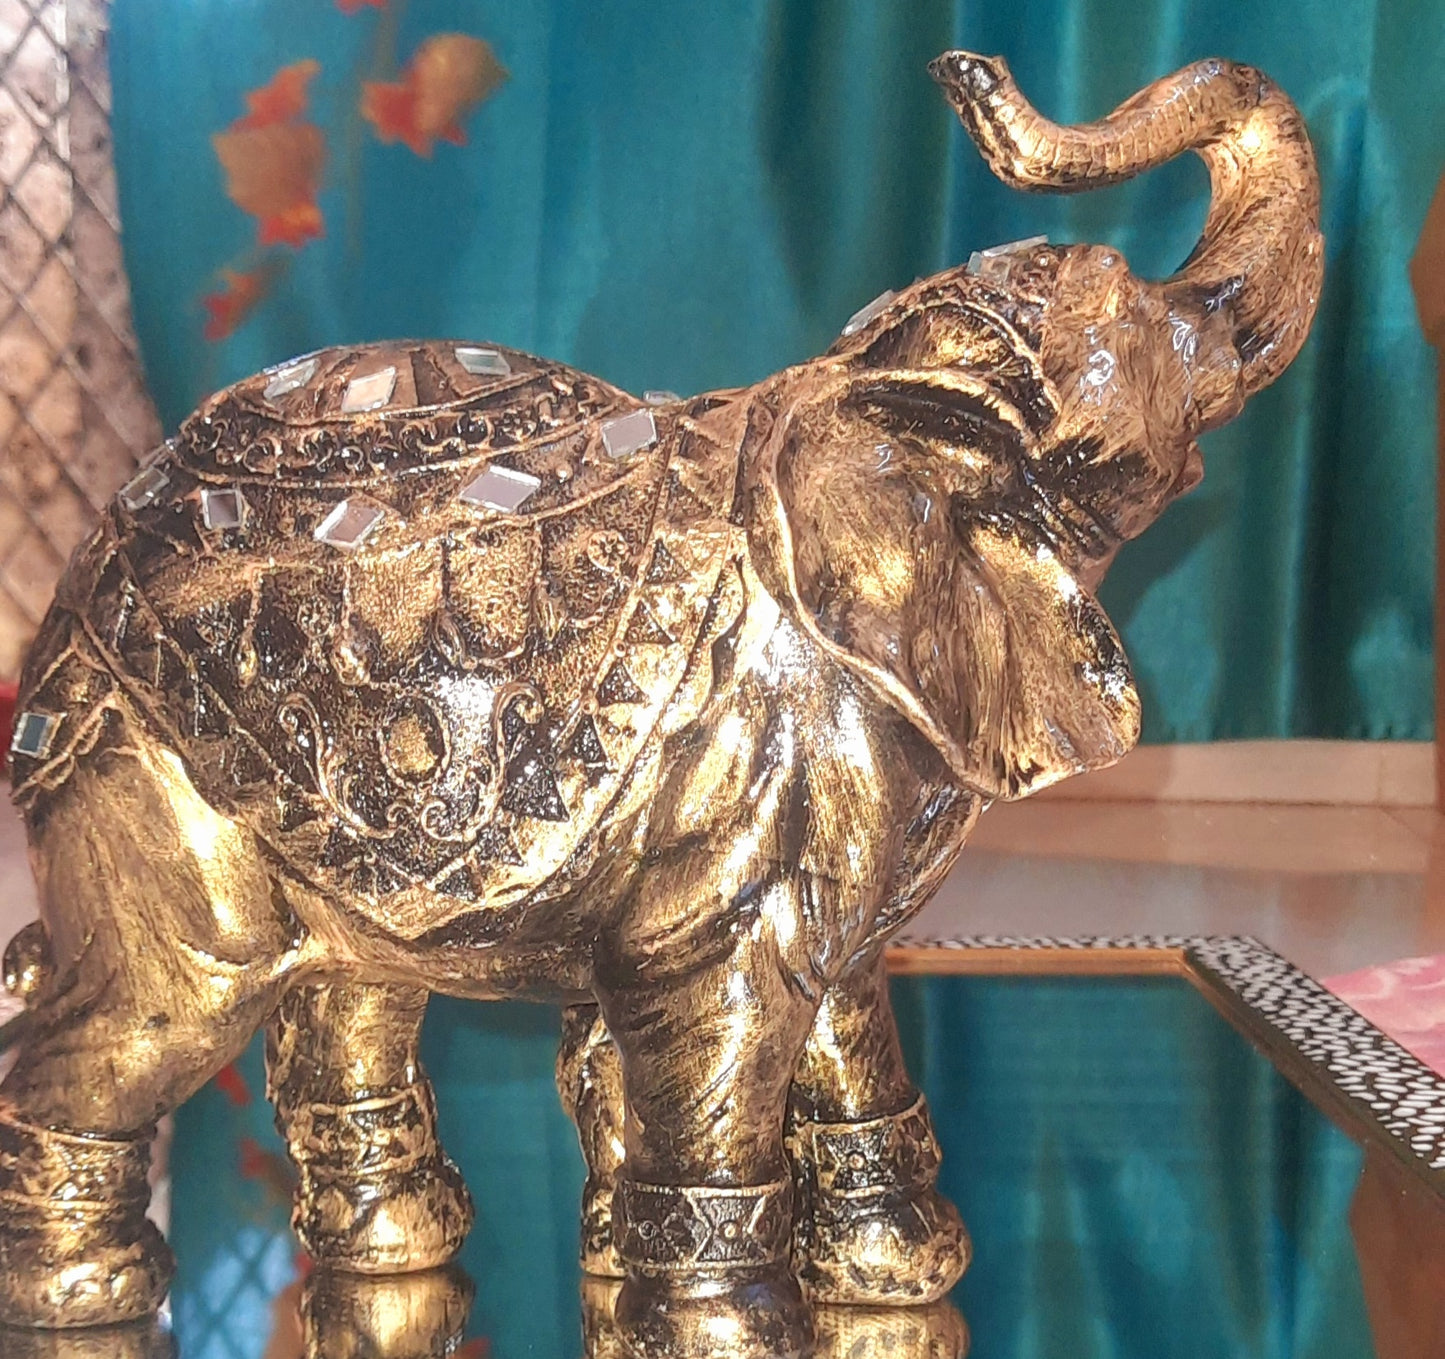 Jaipuri Elephant with Baby elephant